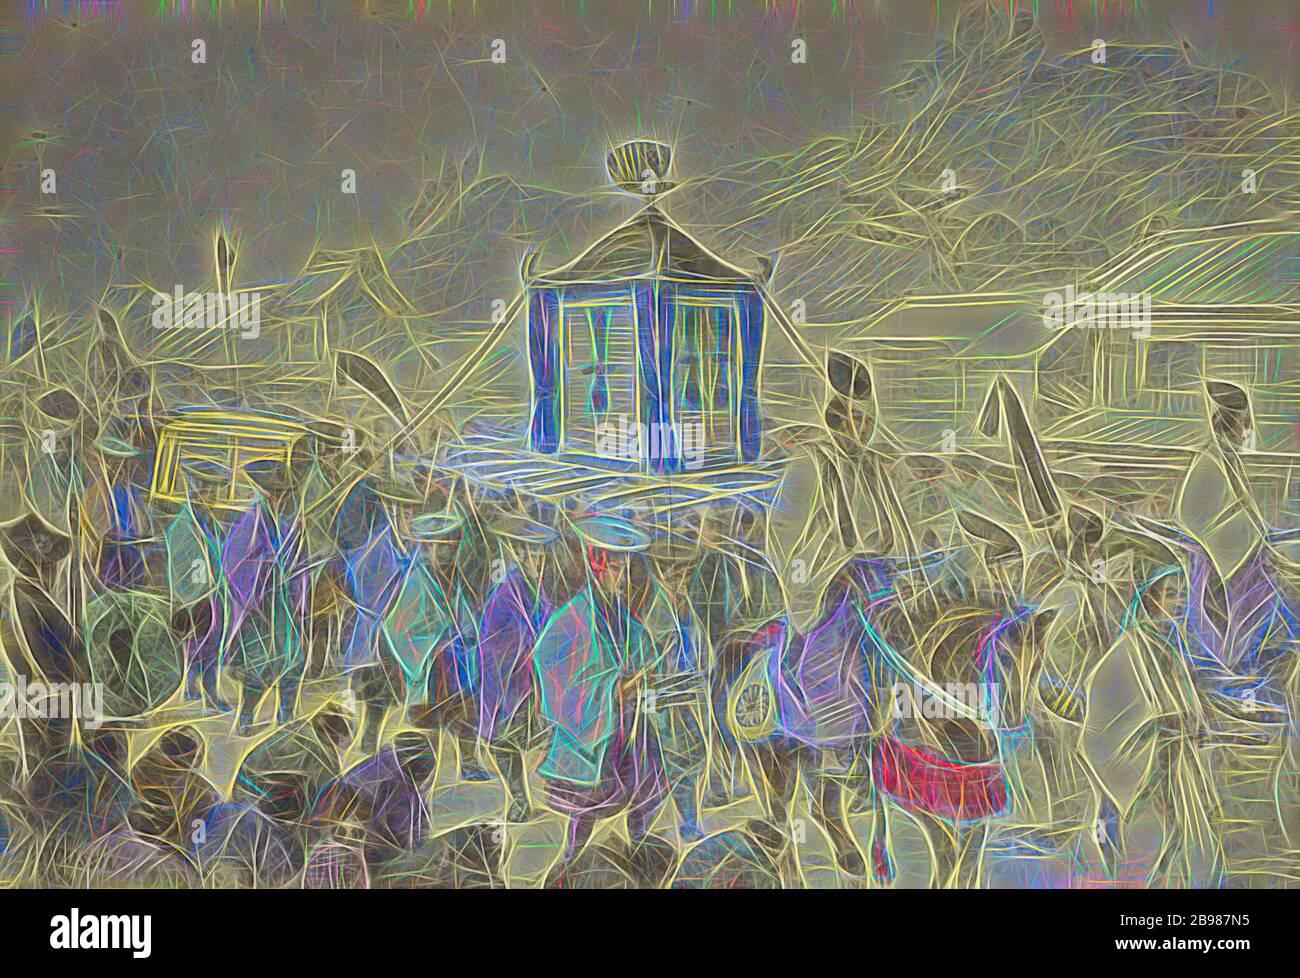 La Procesión de Mikado, Felice Beato (Inglés, Italia nacida, 1832 - 1909), Japón, 1868, álbum de color mano de plata, 19.1 x 27.6 cm (7 1/2 x 10 7/8 in.), Reimaged by Gibon, diseño de cálido brillo alegre y rayos de luz radiance. Arte clásico reinventado con un toque moderno. Fotografía inspirada en el futurismo, abrazando la energía dinámica de la tecnología moderna, el movimiento, la velocidad y la revolución de la cultura. Foto de stock